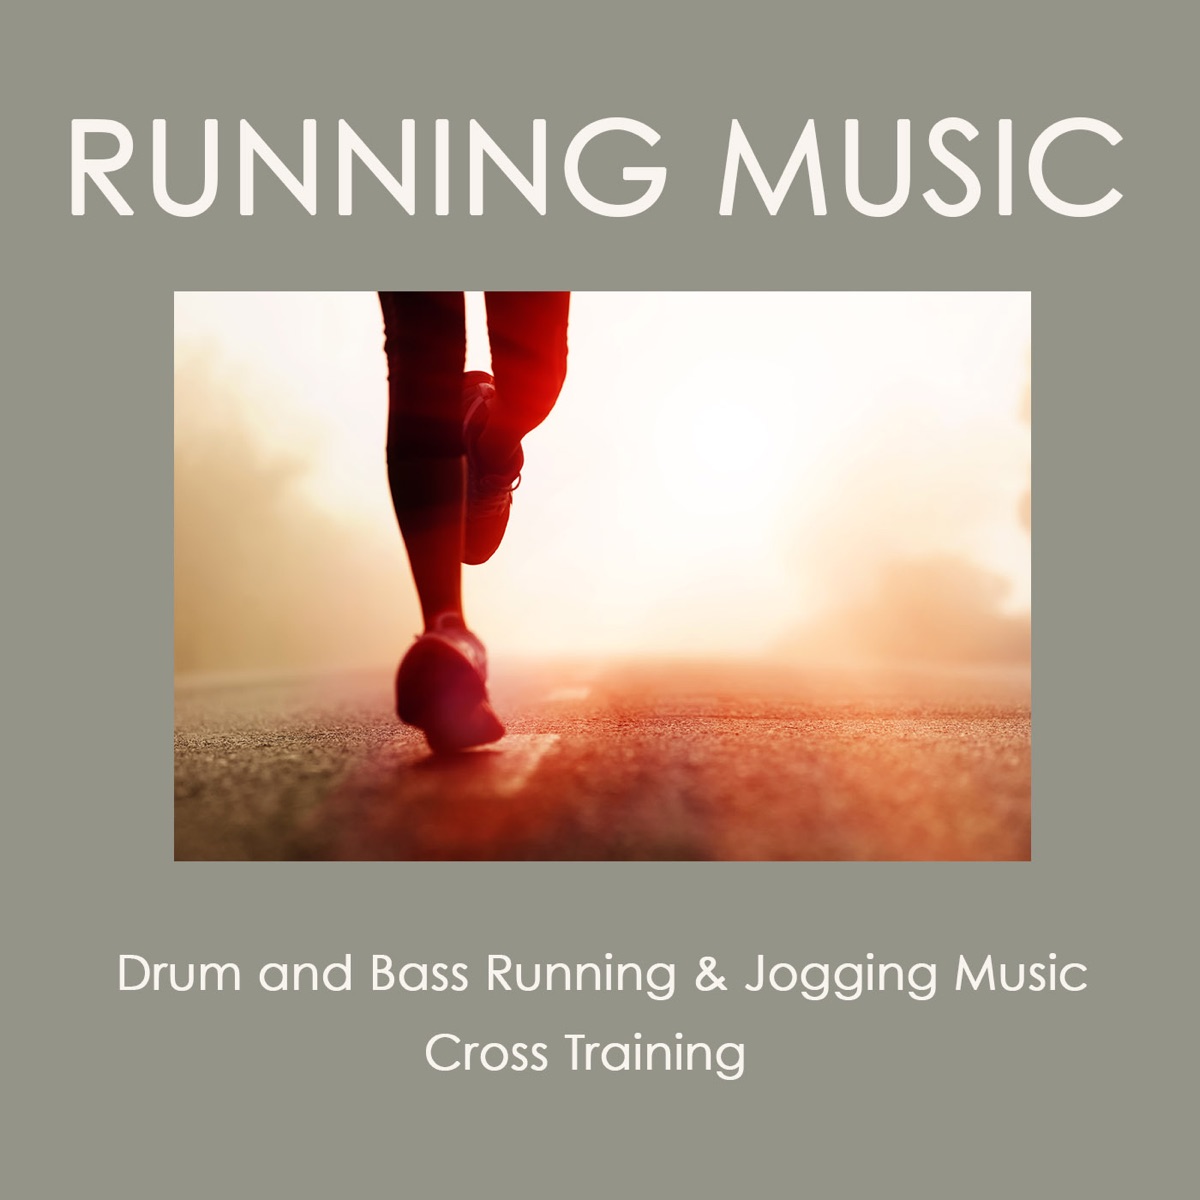 Running Music: Drum and Bass Running & Jogging Music, Cross Training -  Album by Running Music - Apple Music